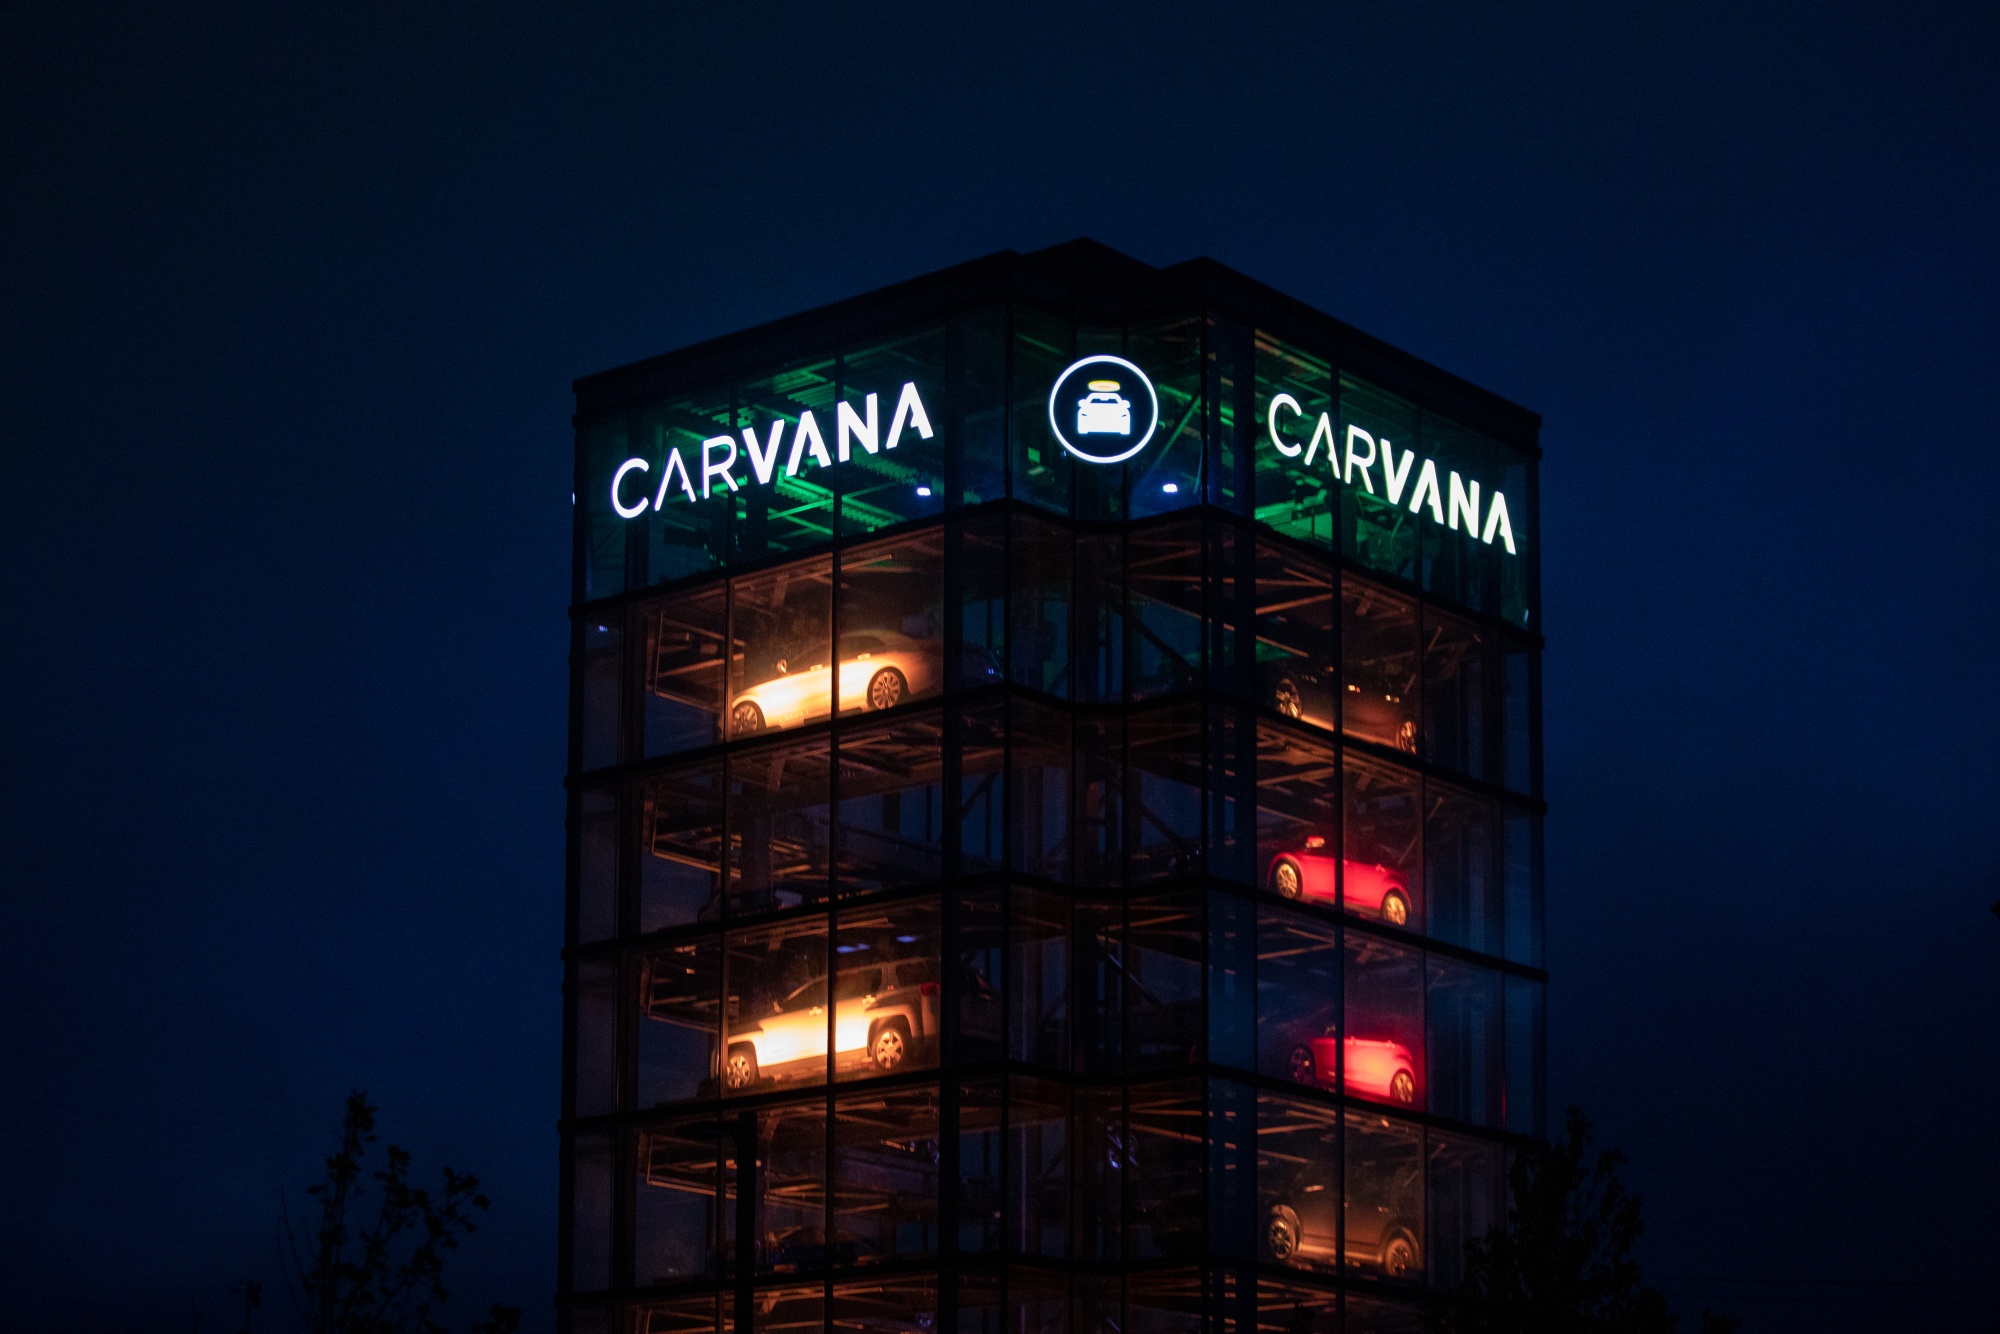 A Carvana Vending Machine location in Novi, Michigan.